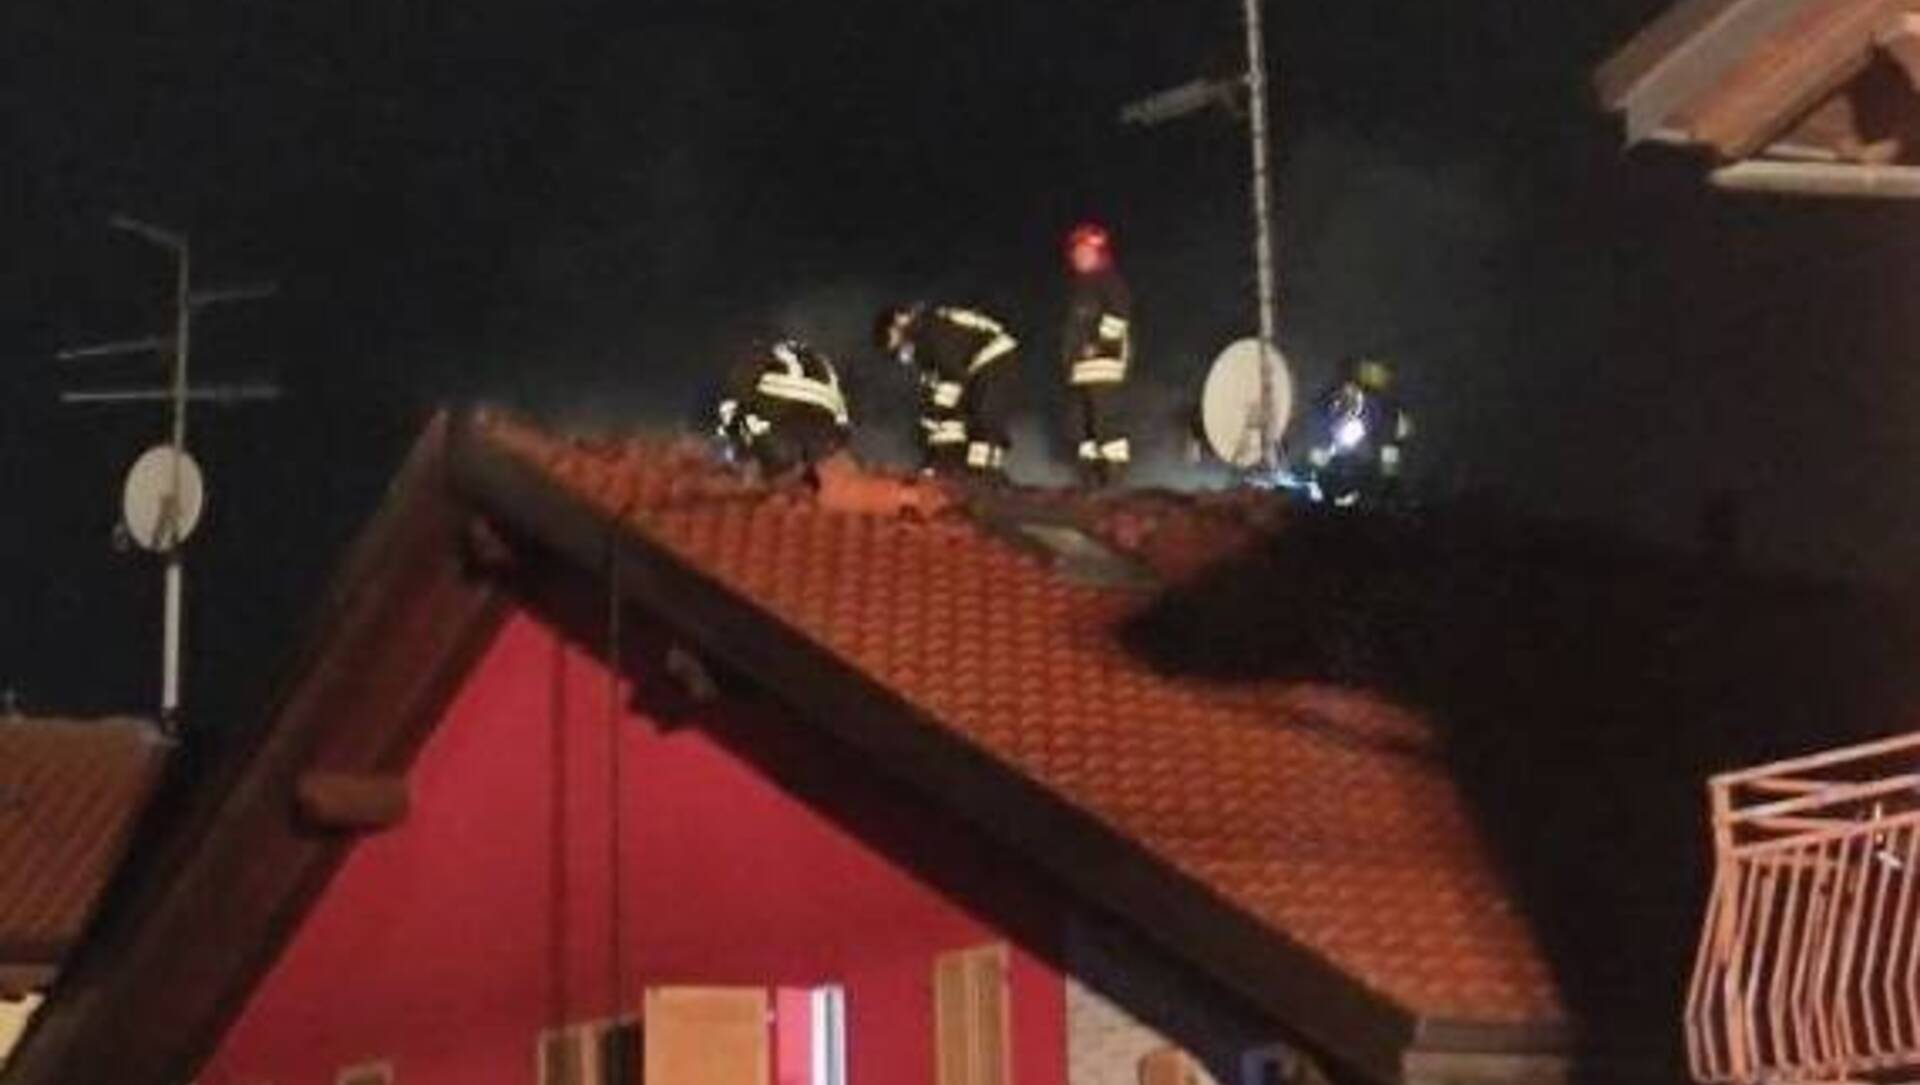 Incendio a Caronno: tetto in fiamme (foto e video)